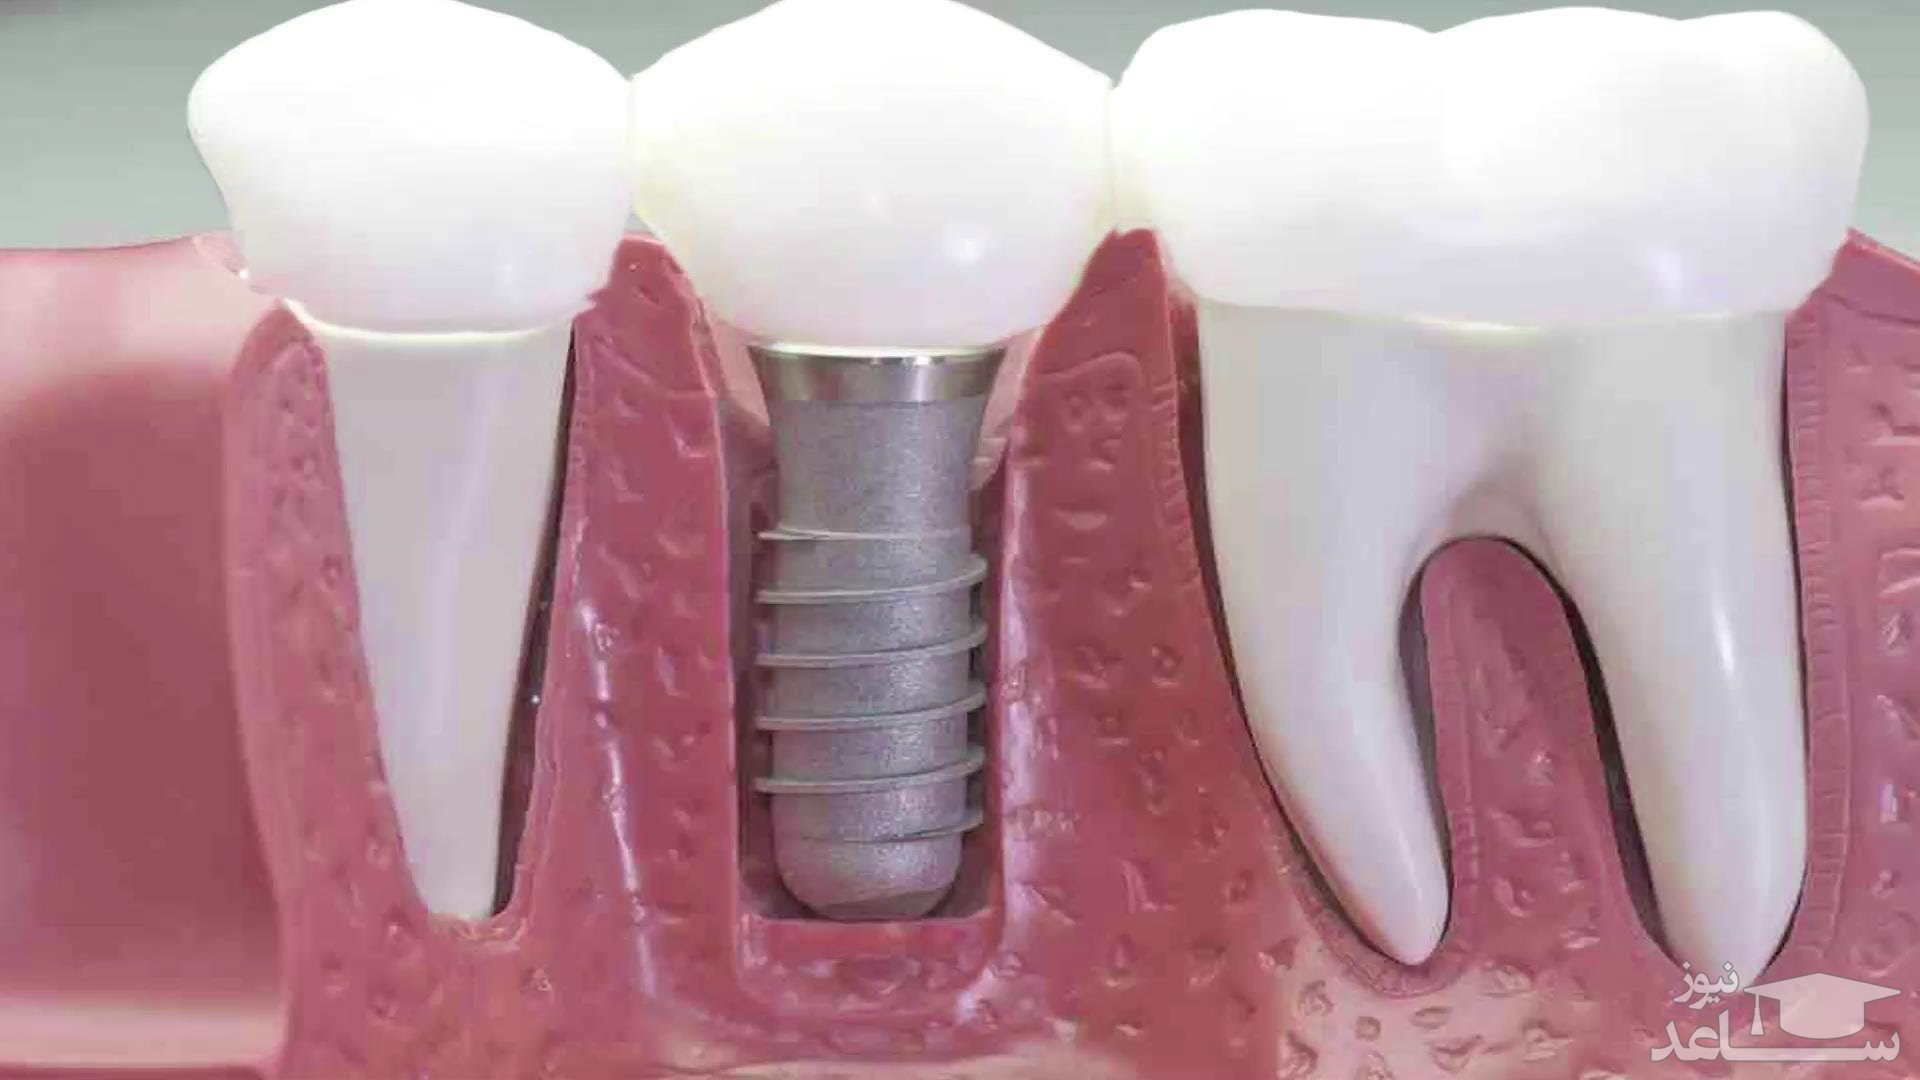 بعد از ایمپلنت دندان کی باید به دکتر مراجعه کرد؟